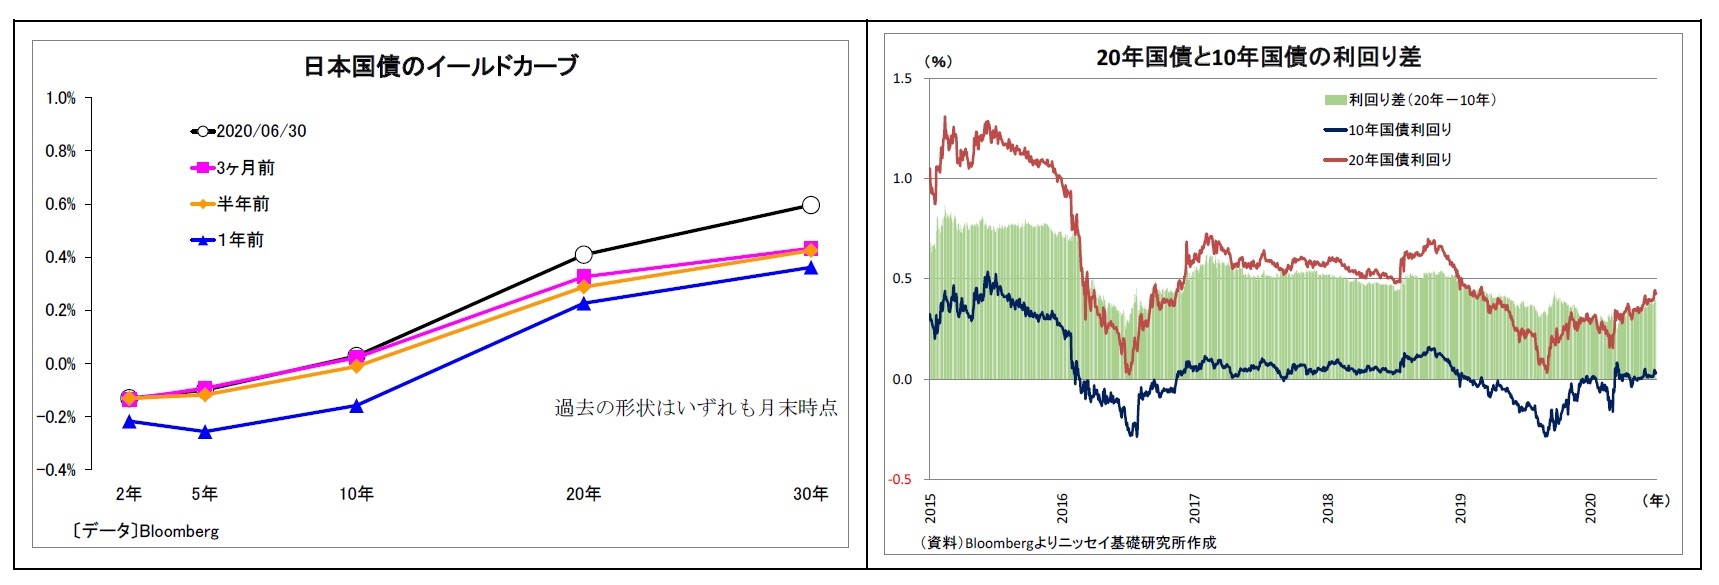 日本国債のイールドカーブ/20年国債と10年国債の利回り差